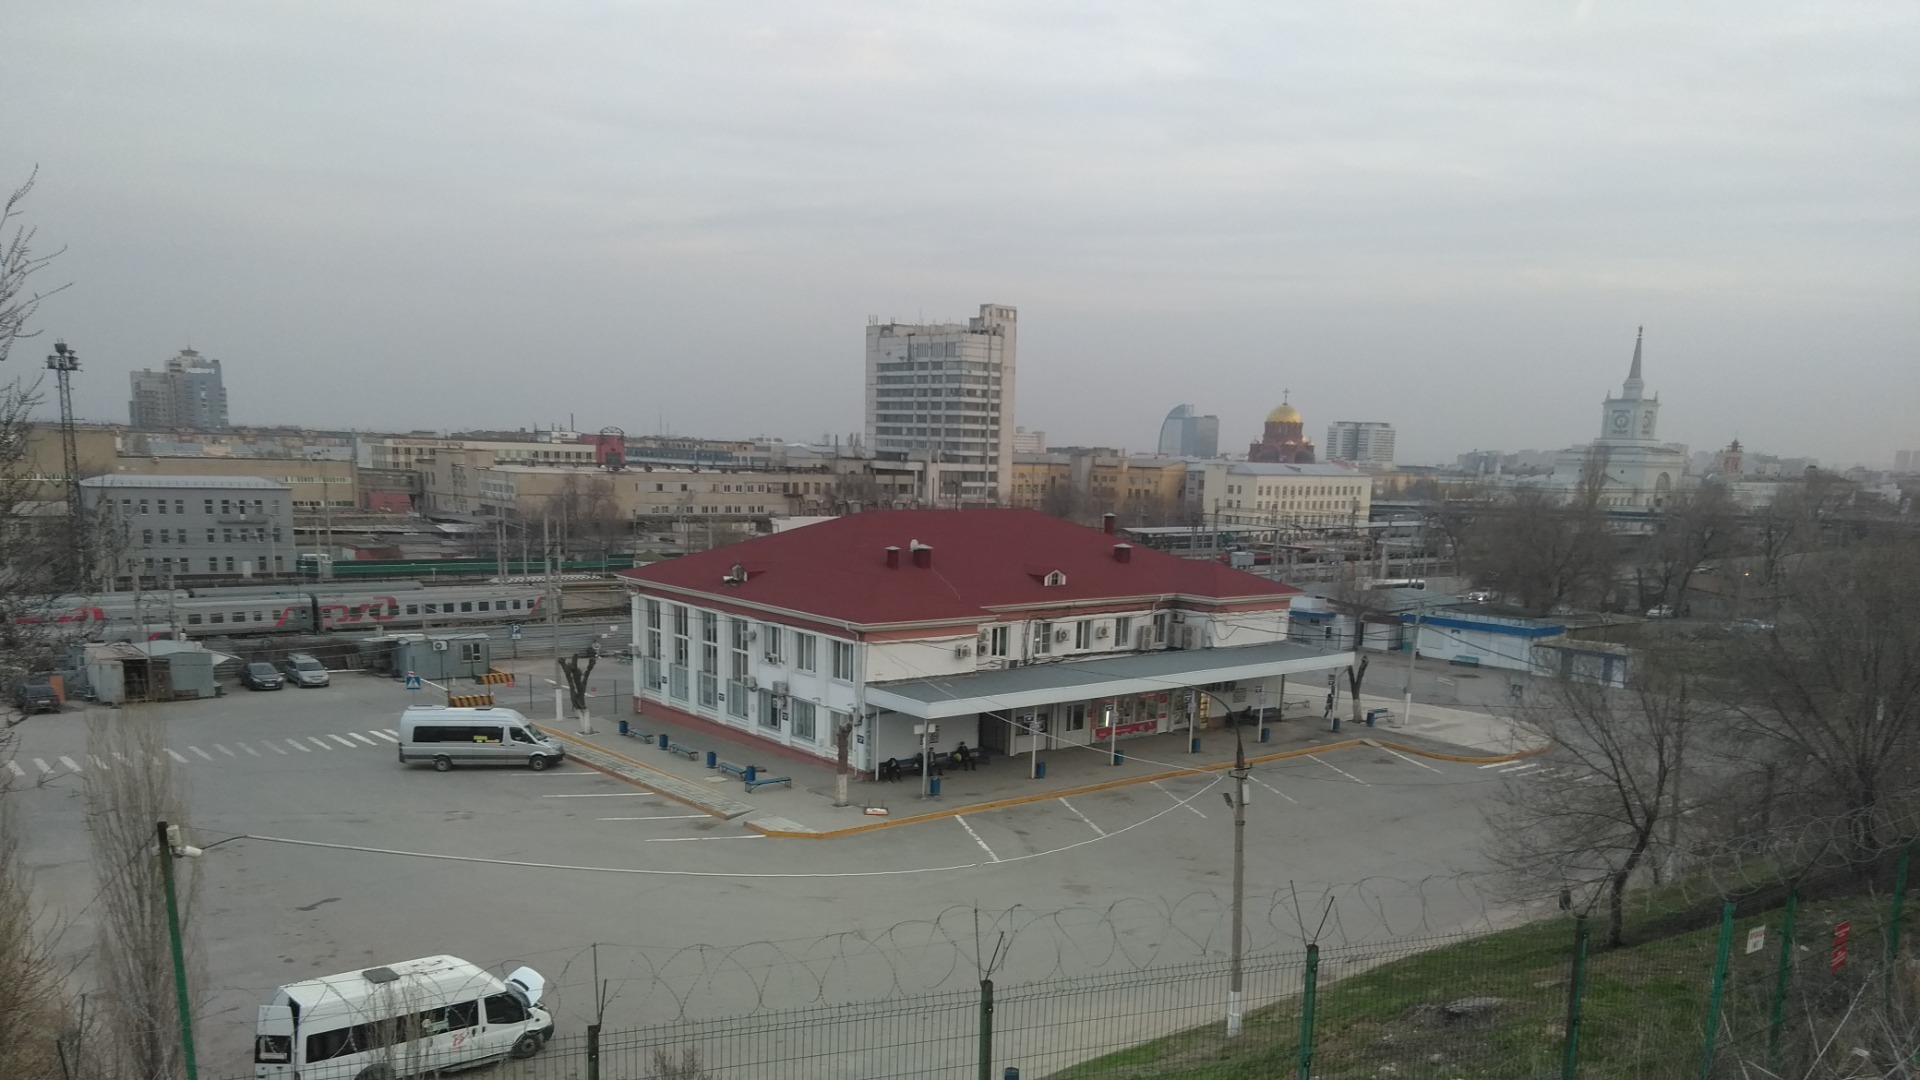 Умер на автовокзале - в Волгограде медики не успели помочь пассажиру